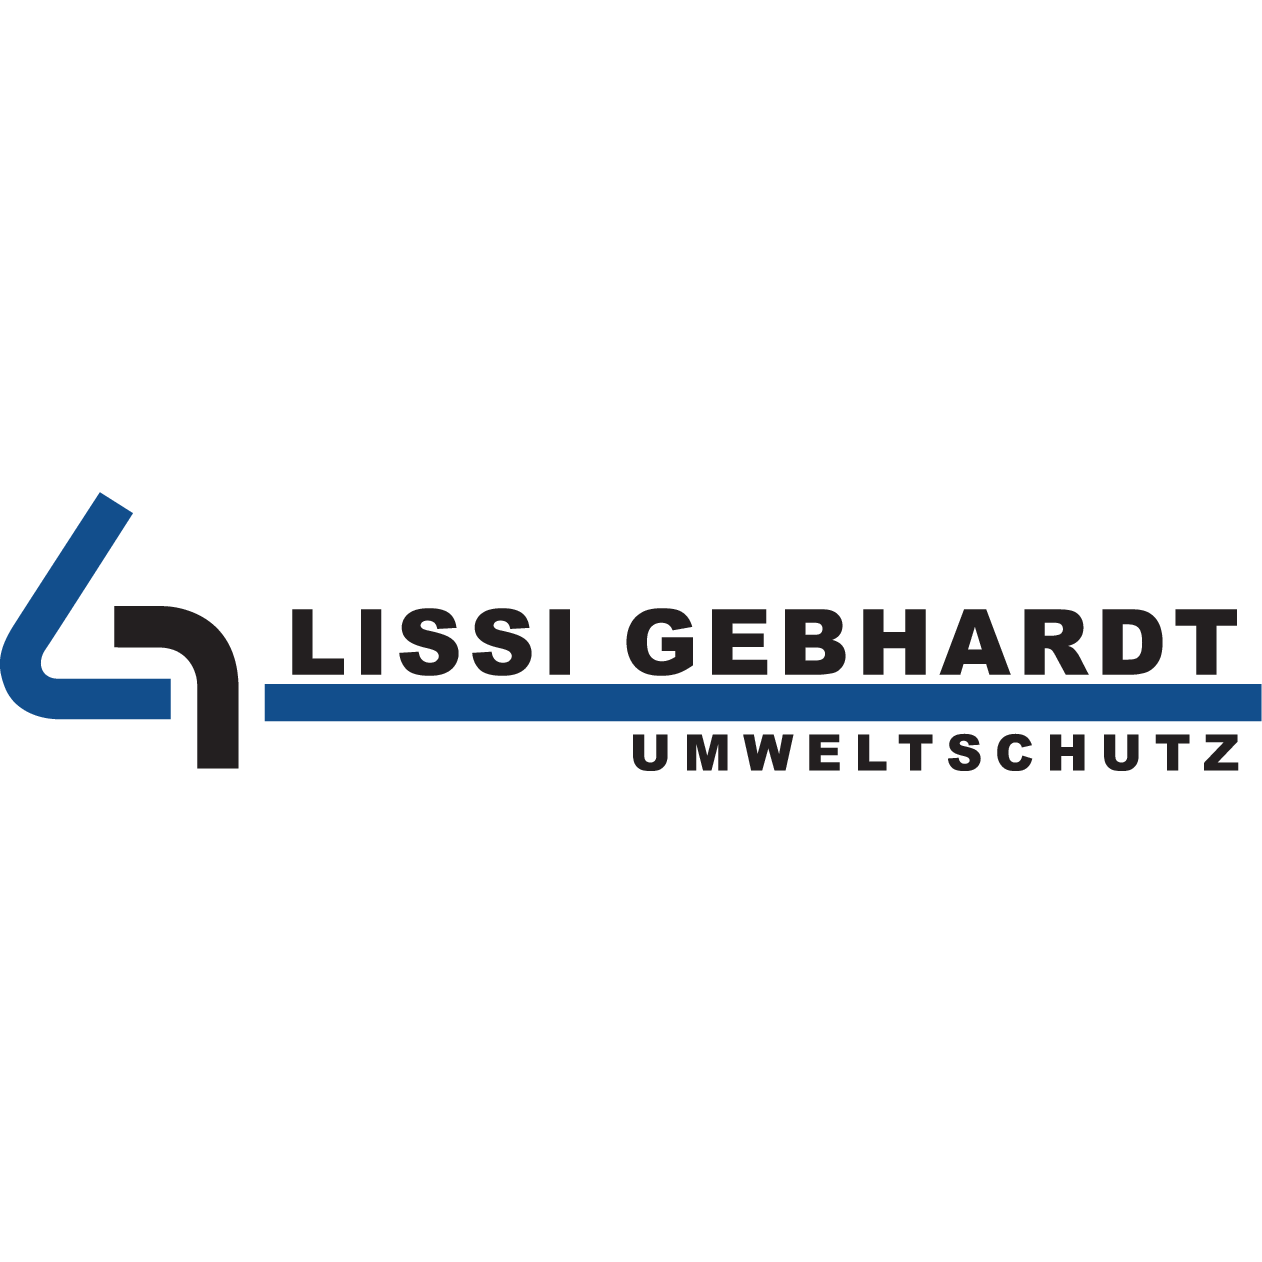 Bild zu Lissi Gebhardt Spezialtransporte Umweltschutz GmbH in Nürnberg